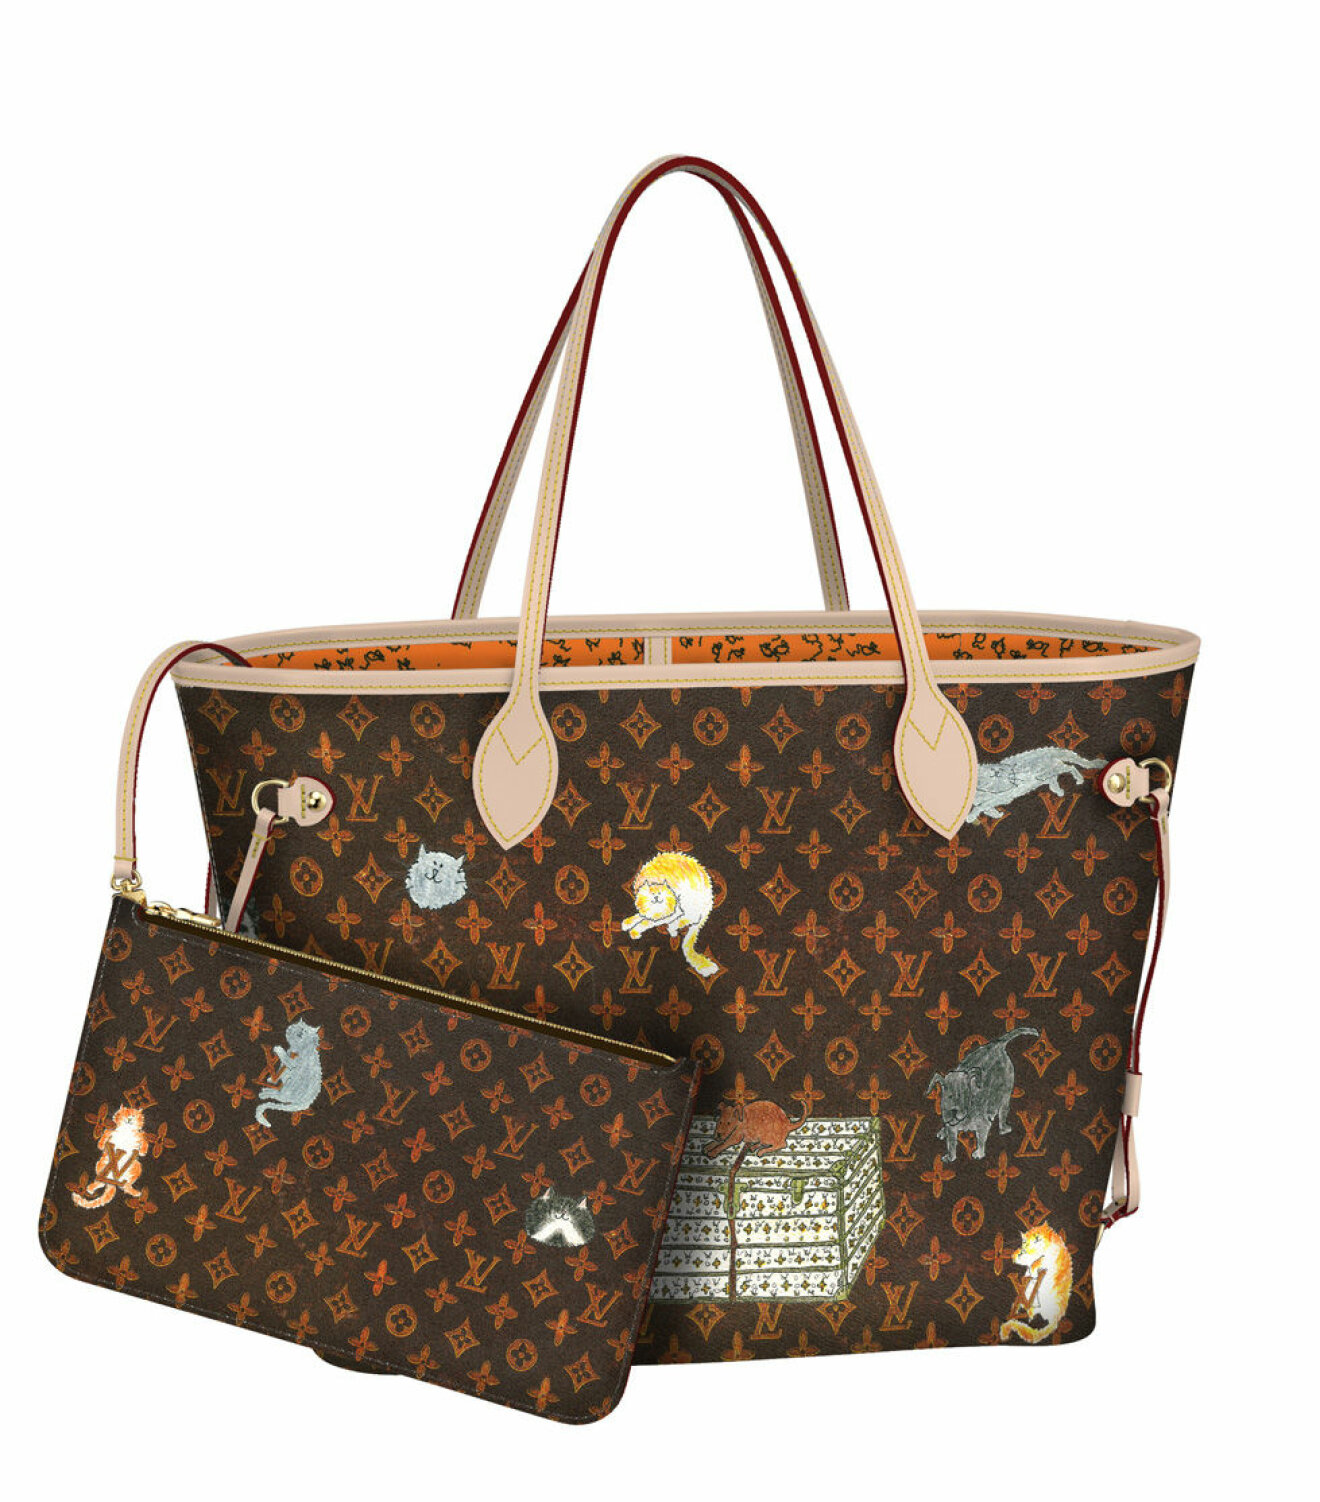 Louis Vuitton x Grace Coddington tote bag